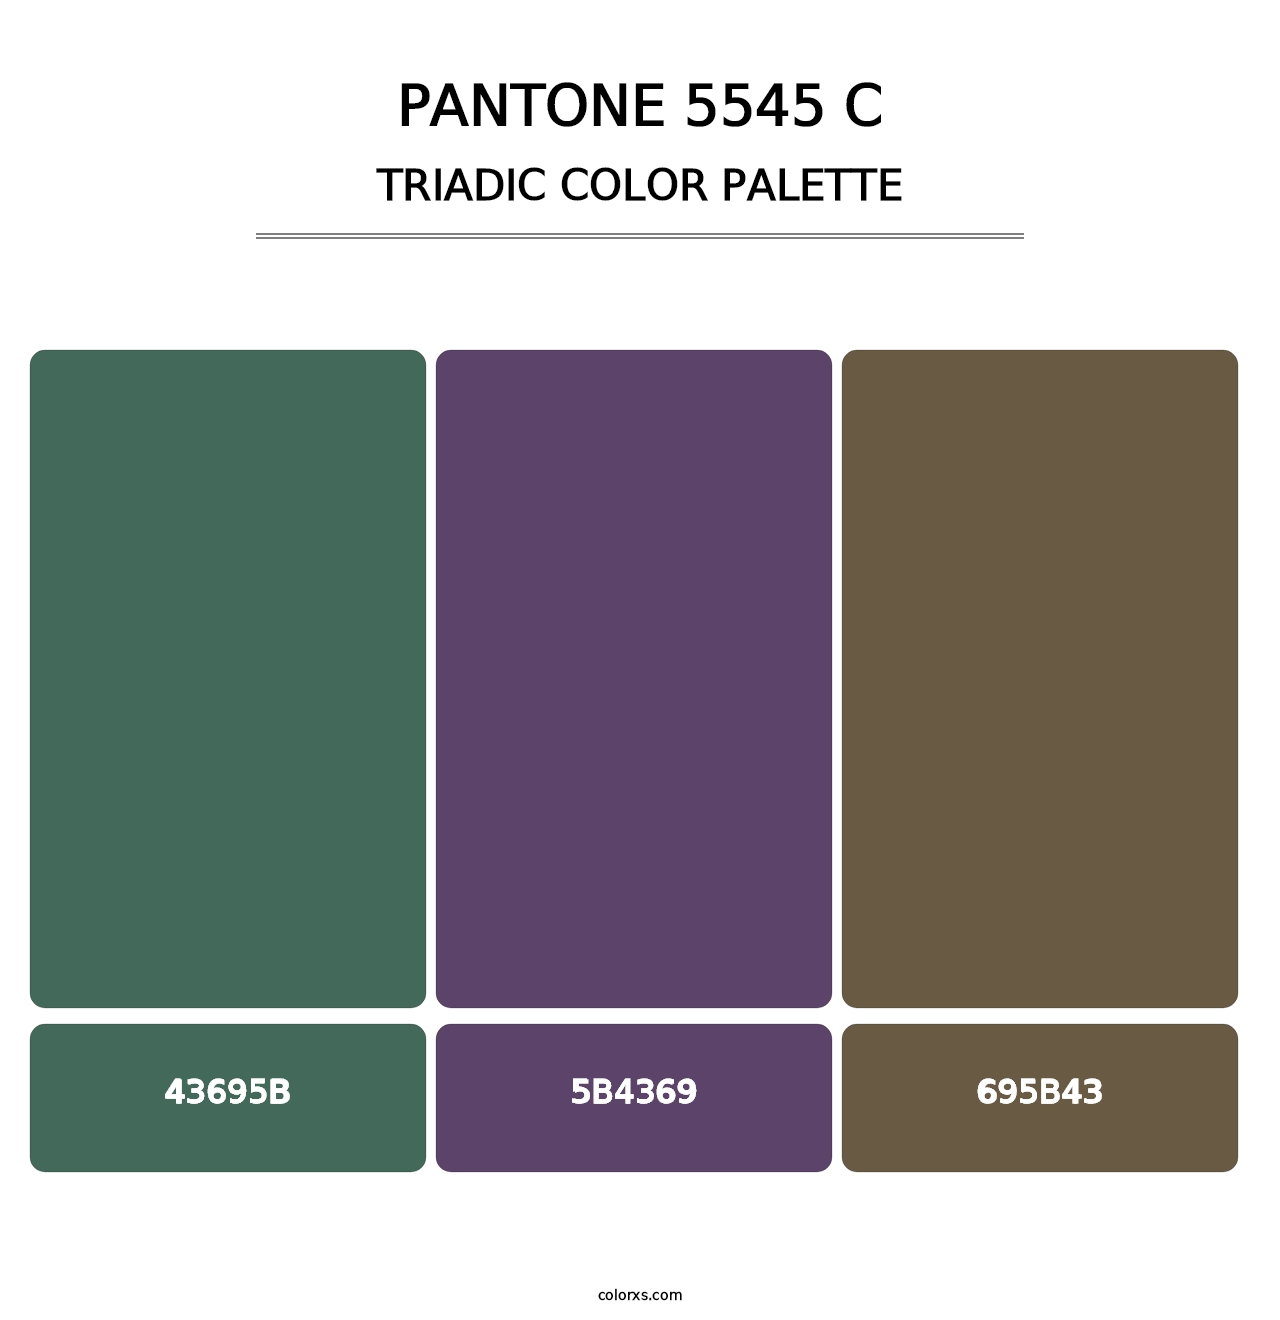 PANTONE 5545 C - Triadic Color Palette